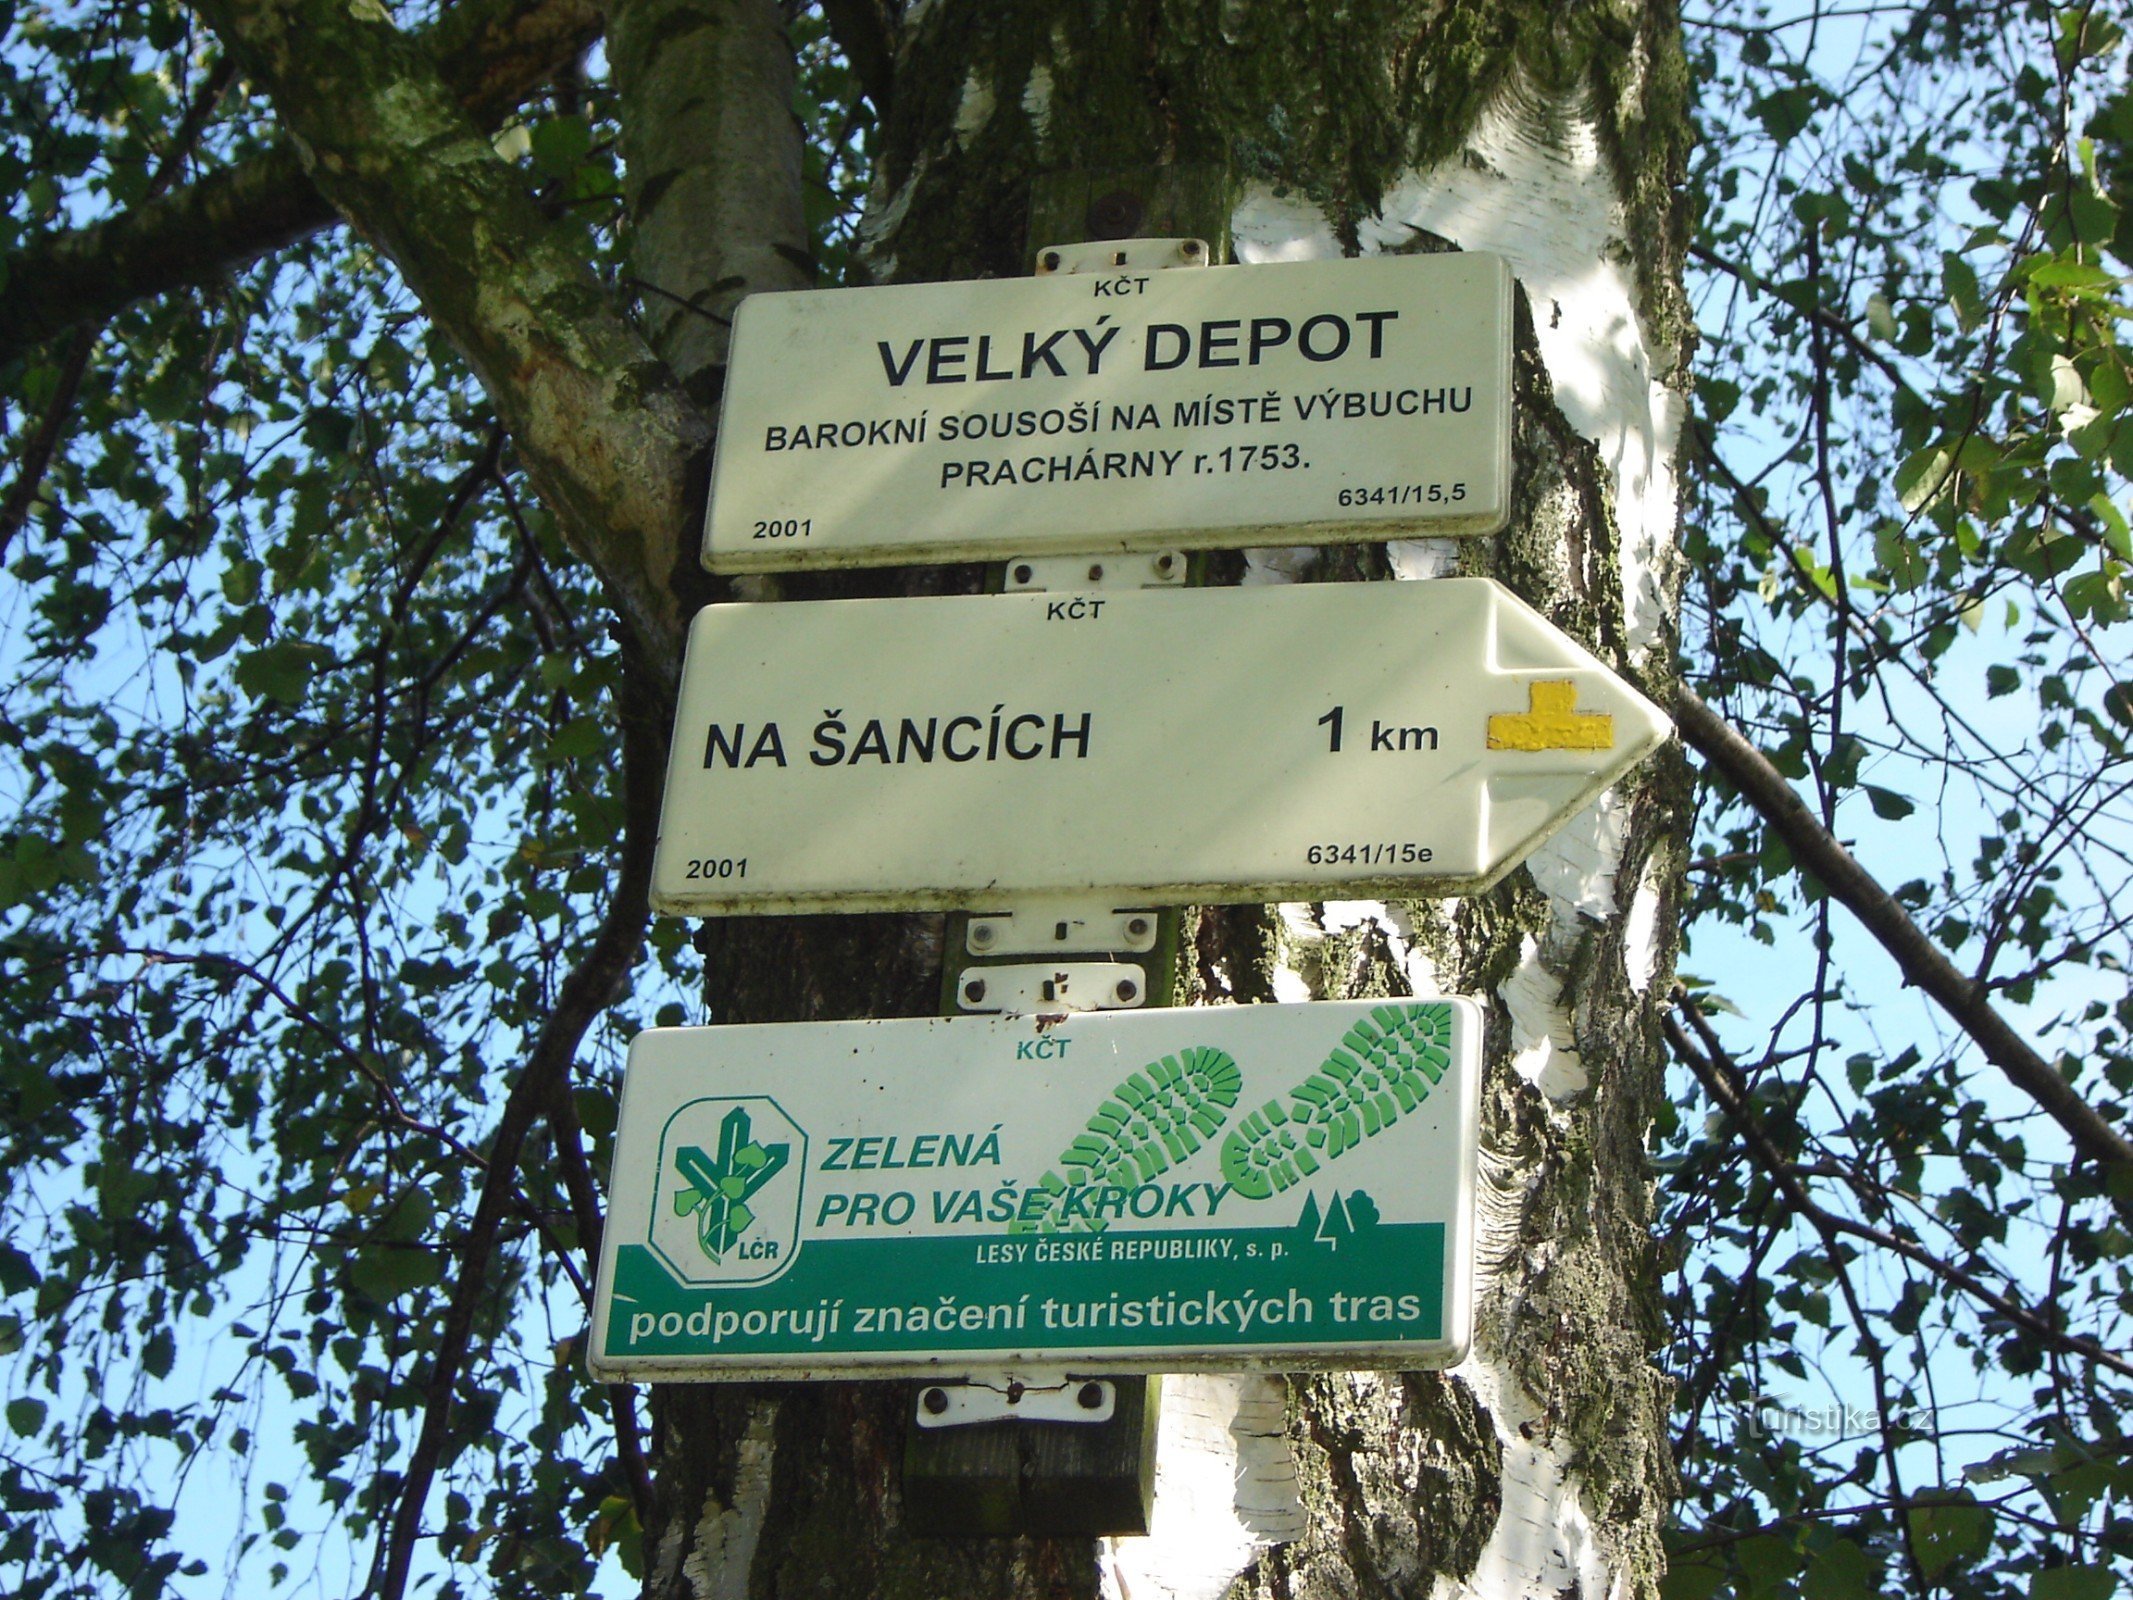 placa de sinalização Velký Depot